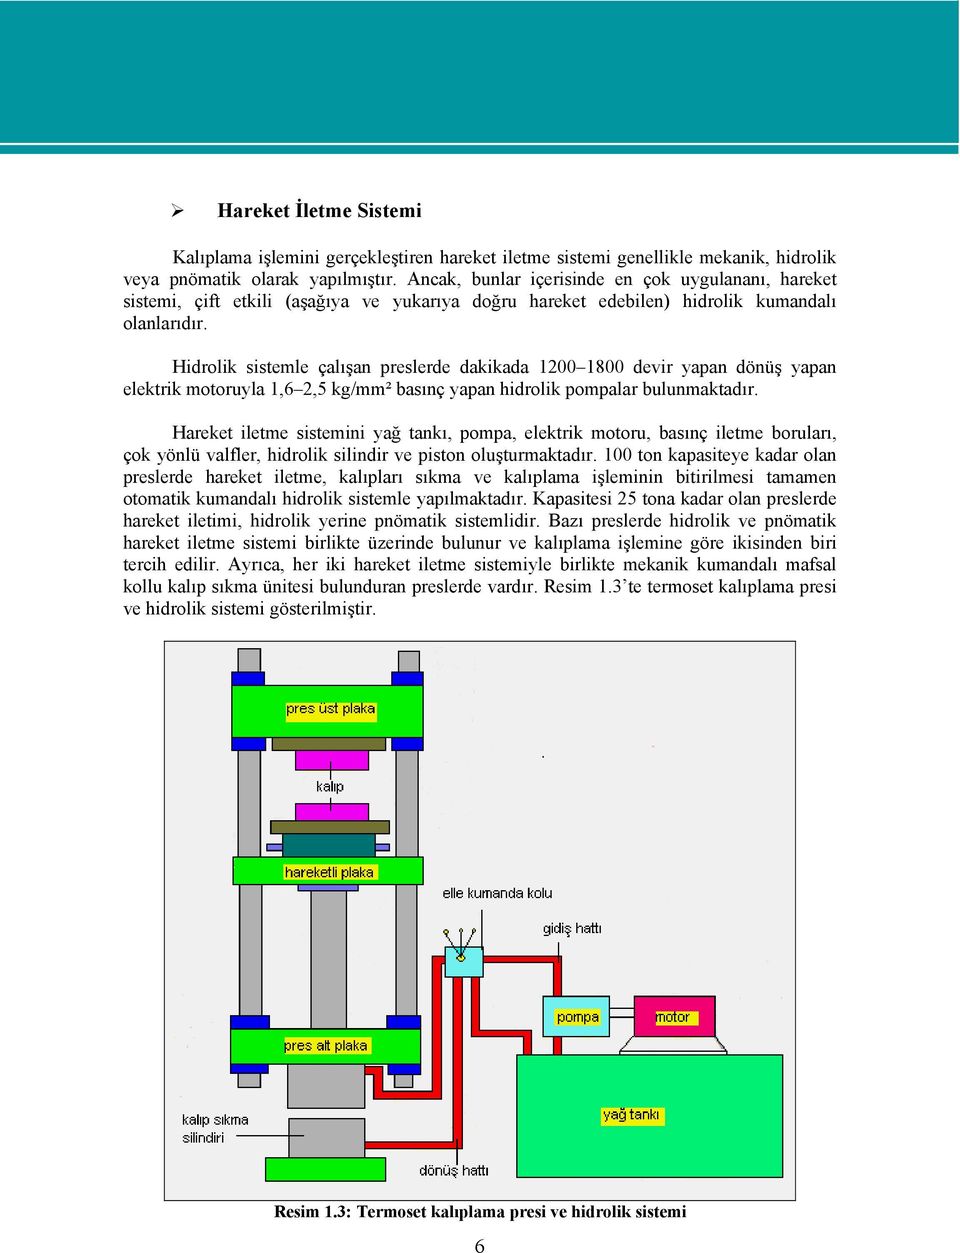 Hidrolik sistemle çalışan preslerde dakikada 1200 1800 devir yapan dönüş yapan elektrik motoruyla 1,6 2,5 kg/mm² basınç yapan hidrolik pompalar bulunmaktadır.